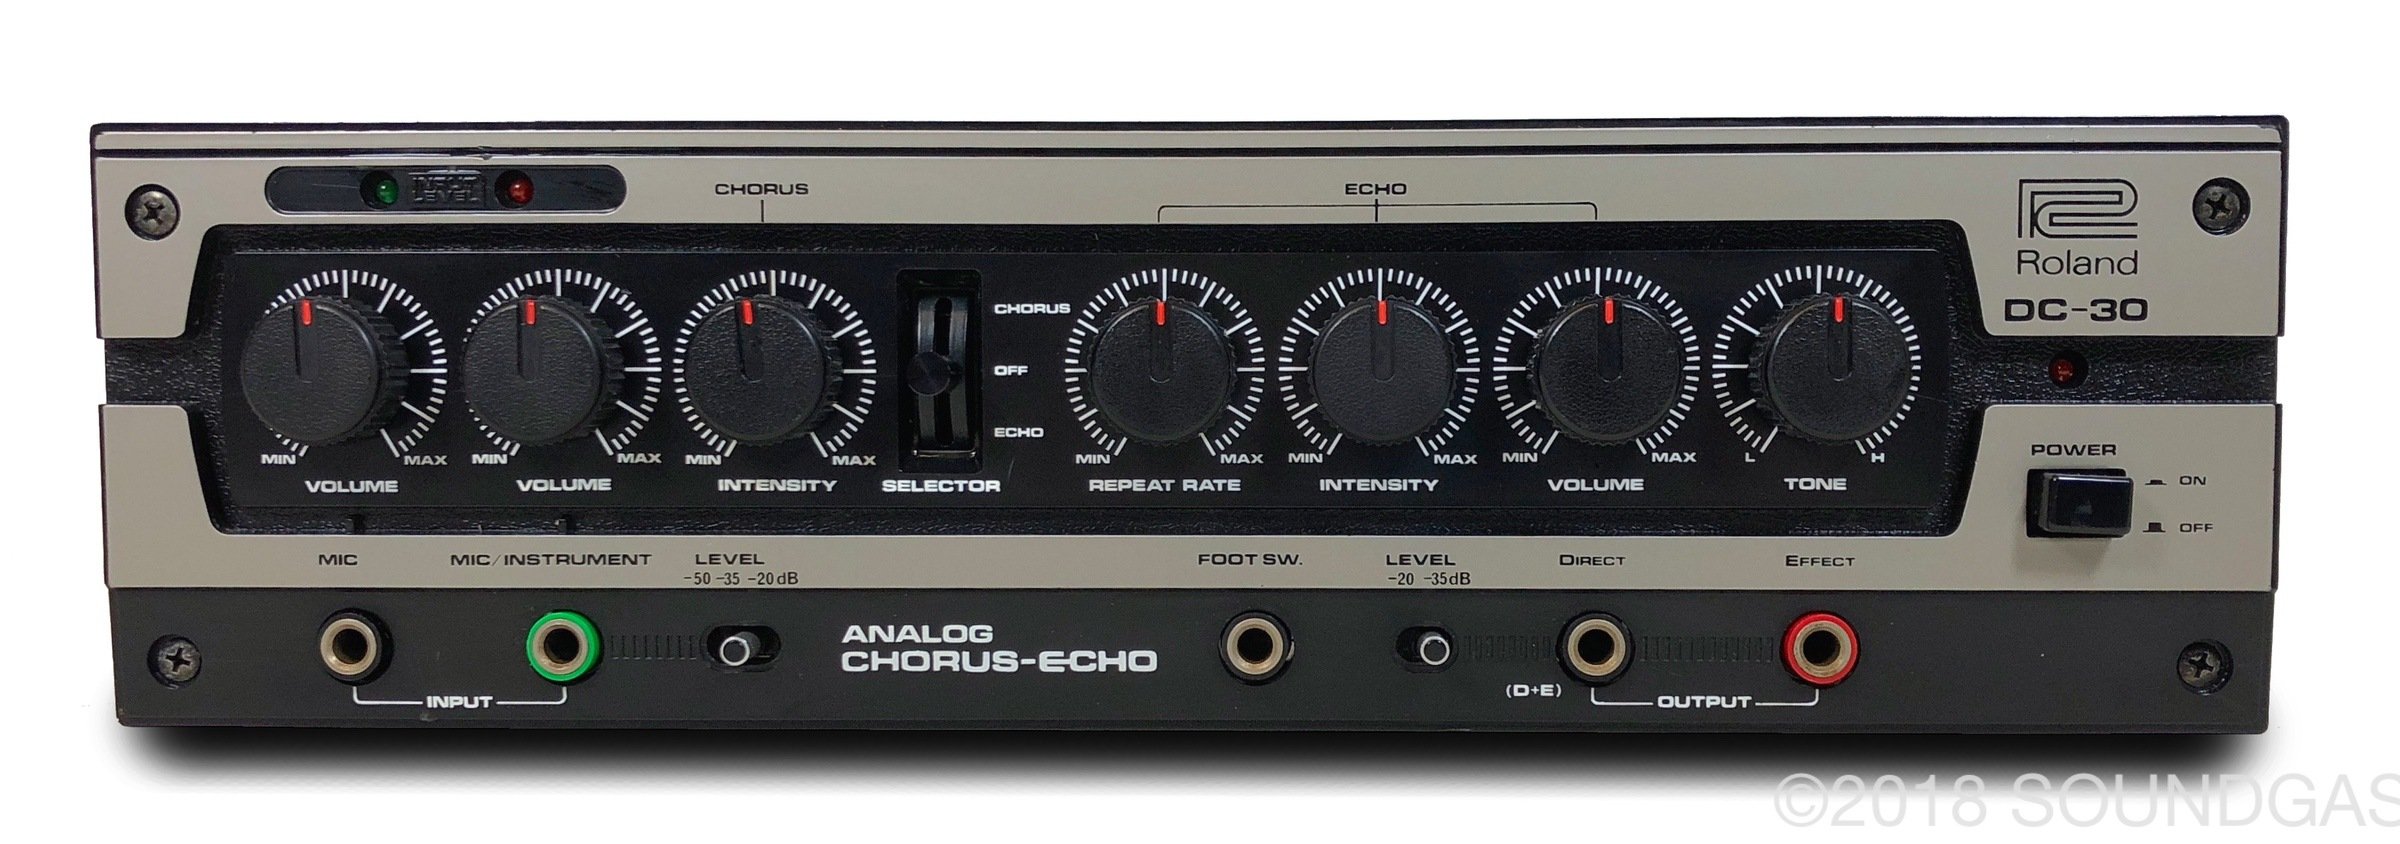 Roland DC-30 Chorus Echo (Boss DM-300) FOR SALE - Soundgas